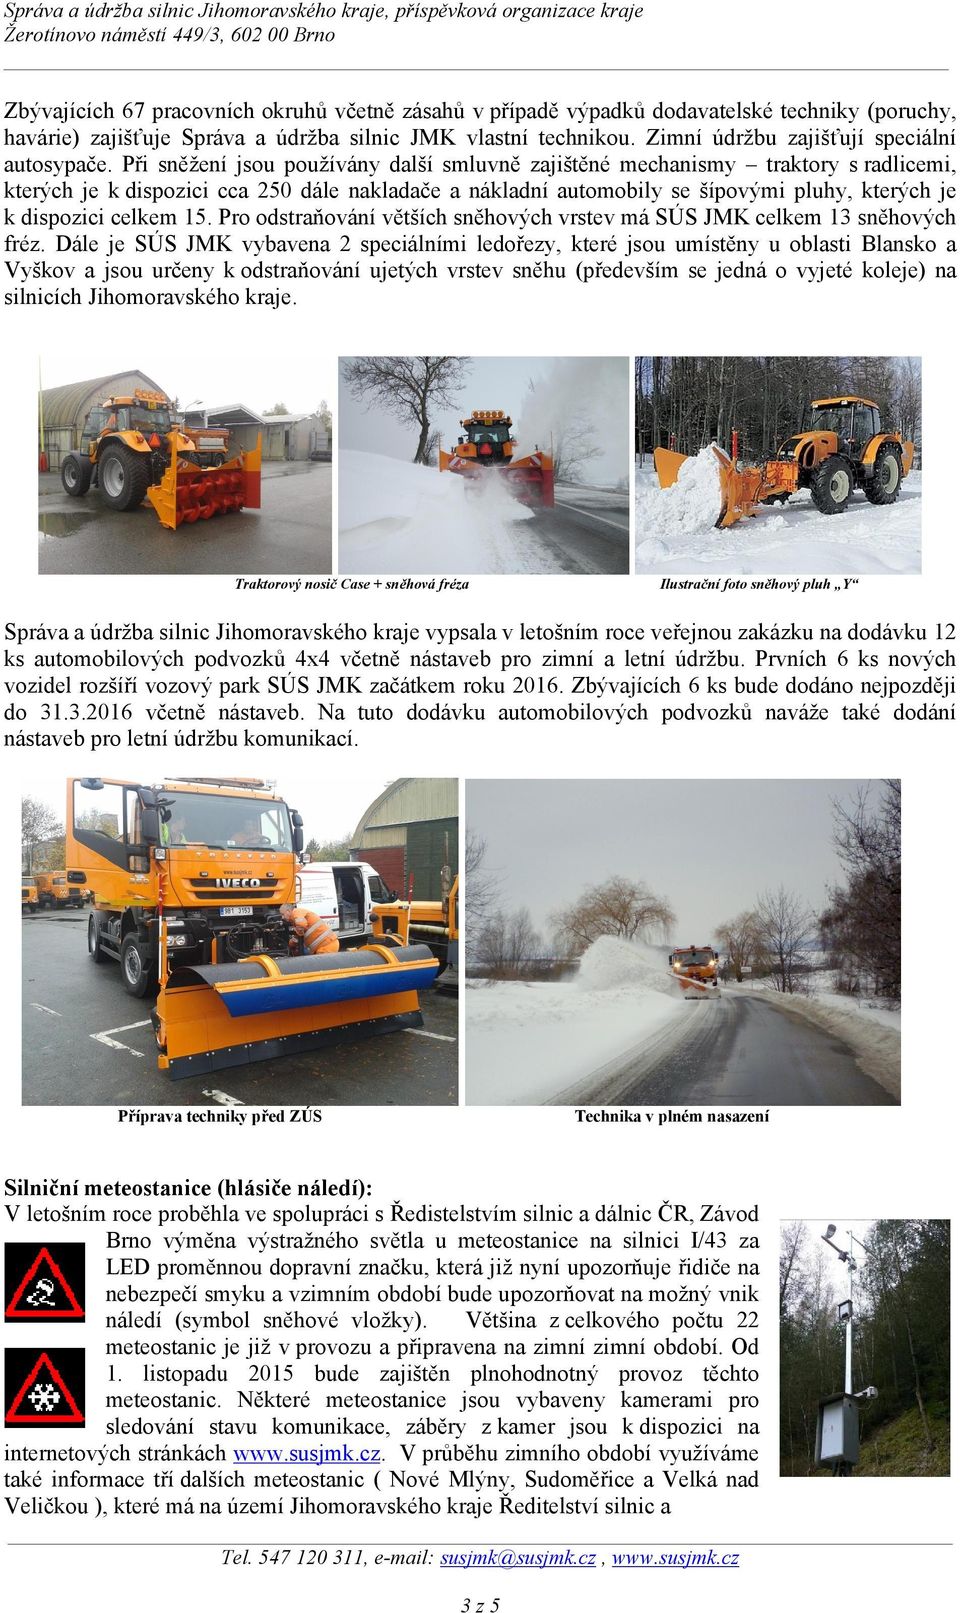 Při sněžení jsou používány další smluvně zajištěné mechanismy traktory s radlicemi, kterých je k dispozici cca 250 dále nakladače a nákladní automobily se šípovými pluhy, kterých je k dispozici